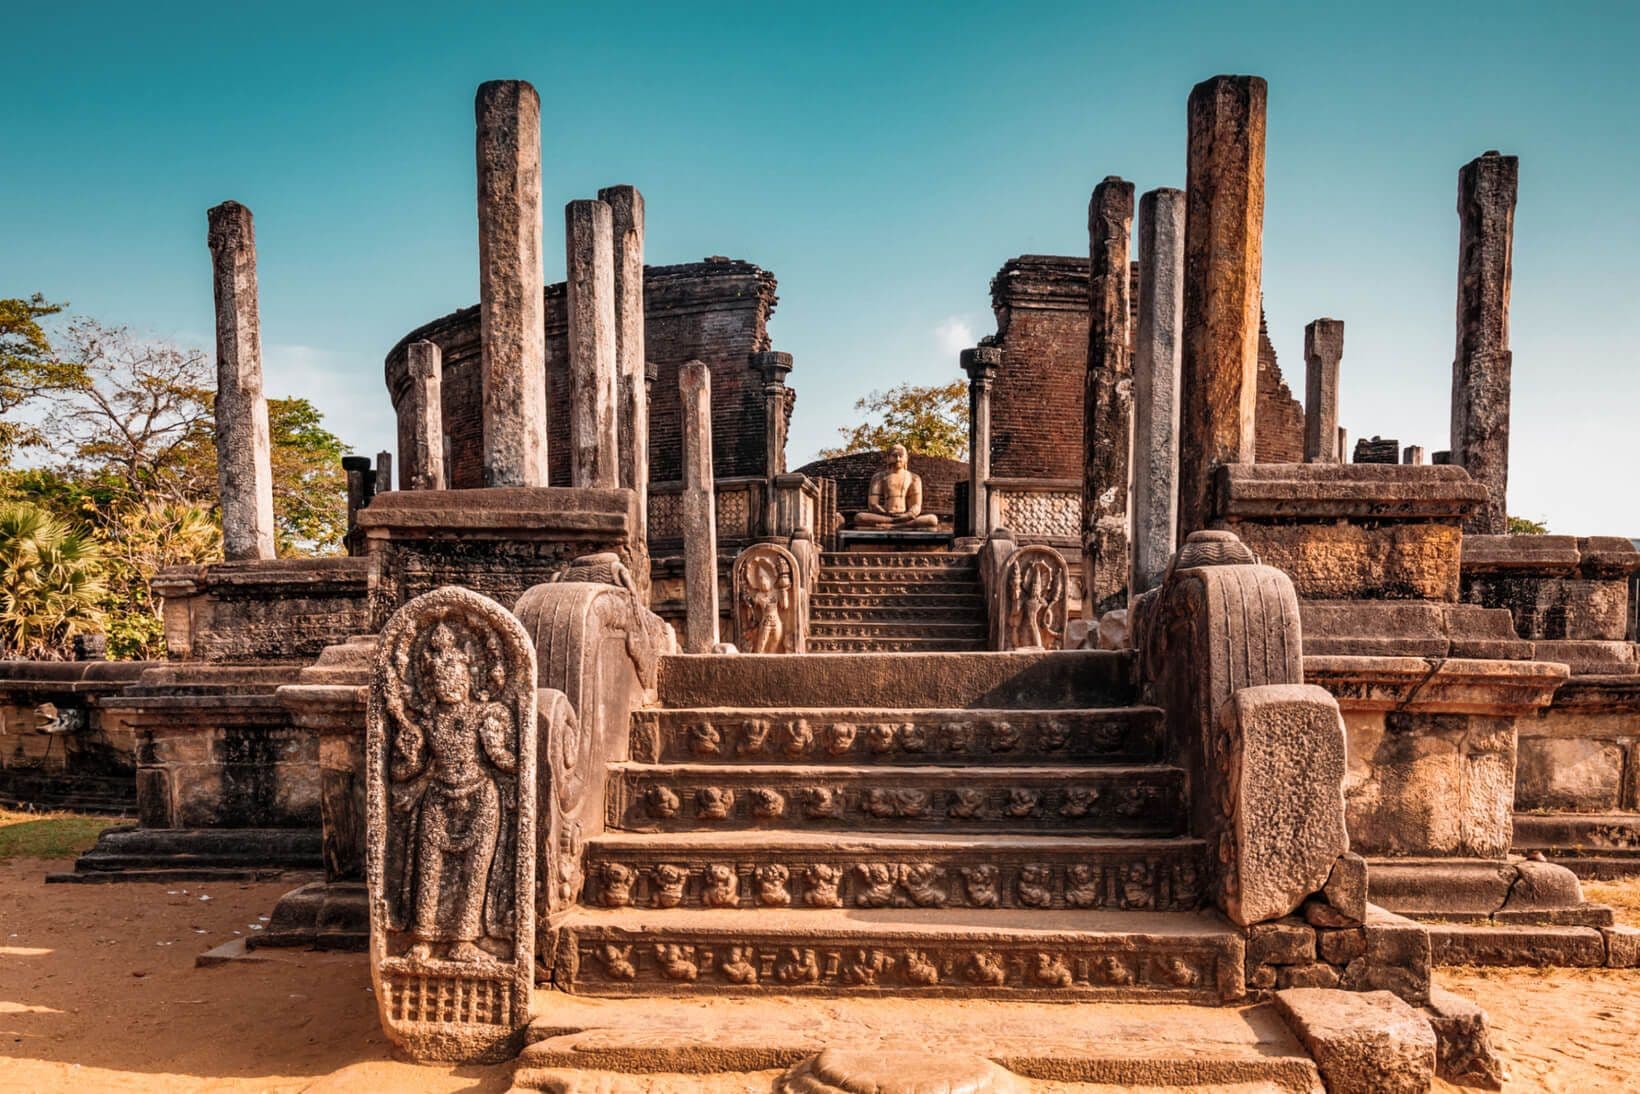 Vatadage-Struktur des alten Königreichs Polonnaruwa, Sri Lanka.